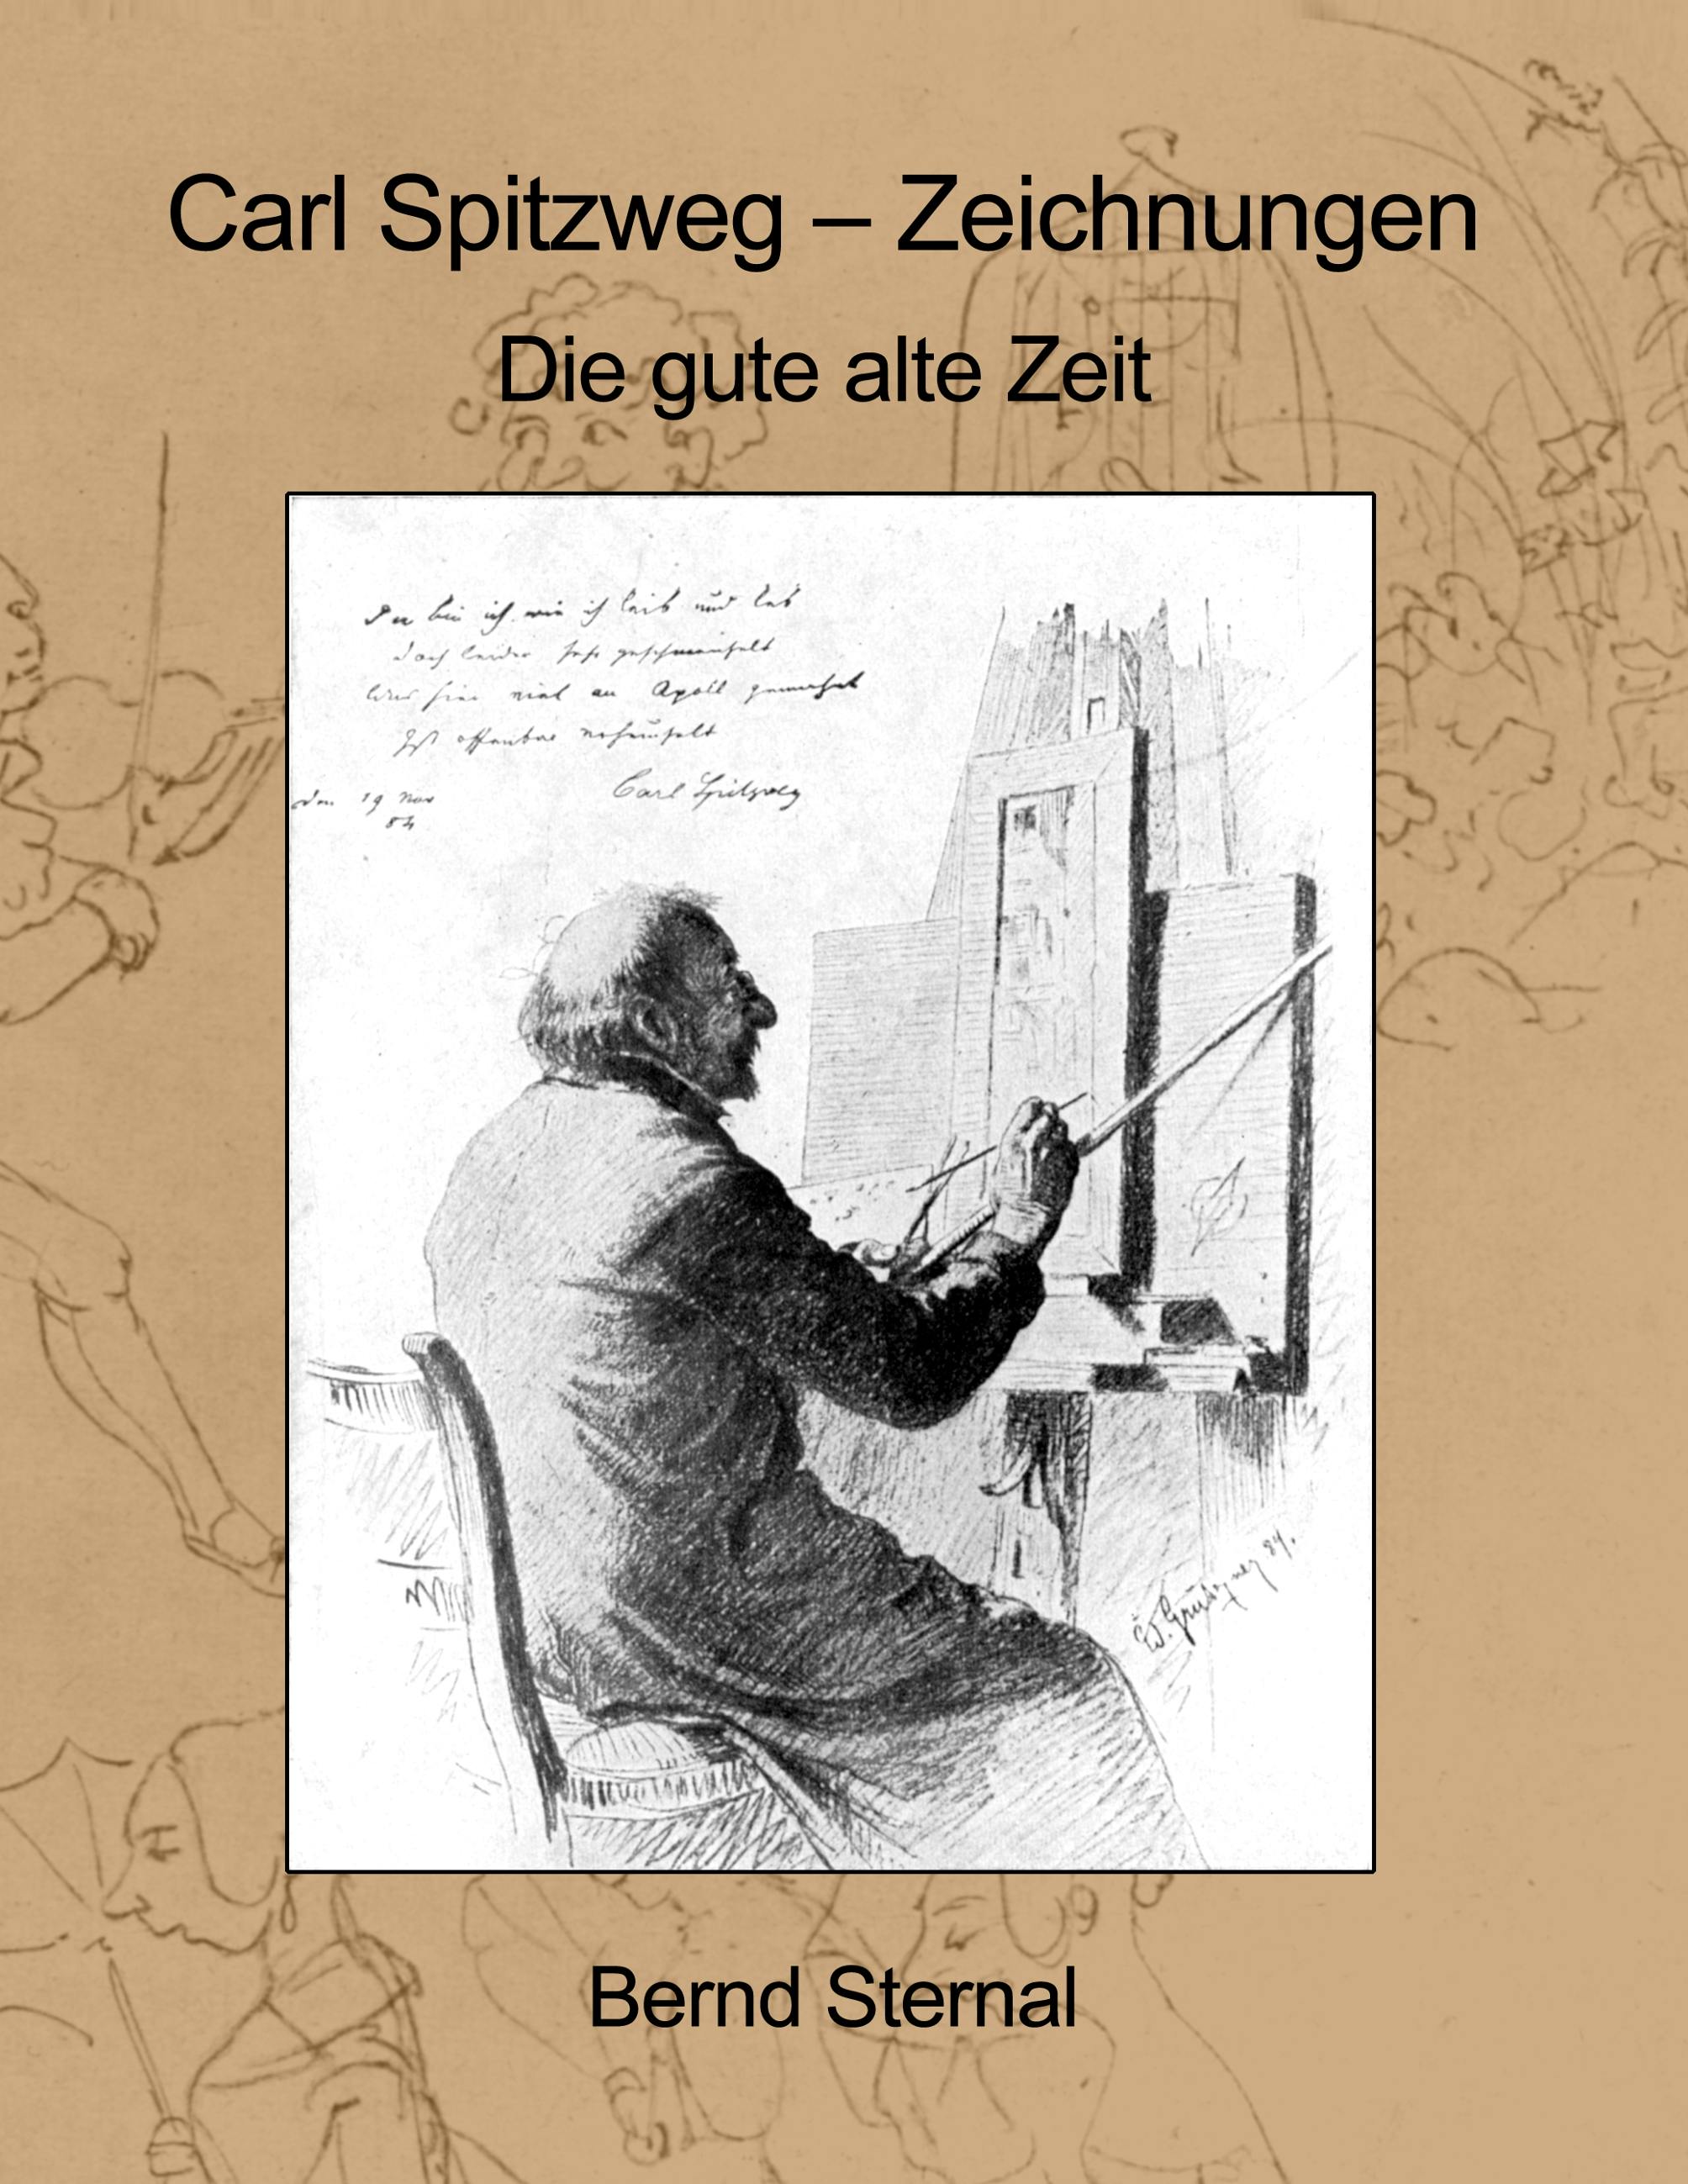 Carl Spitzweg - Zeichnungen - Bernd Sternal